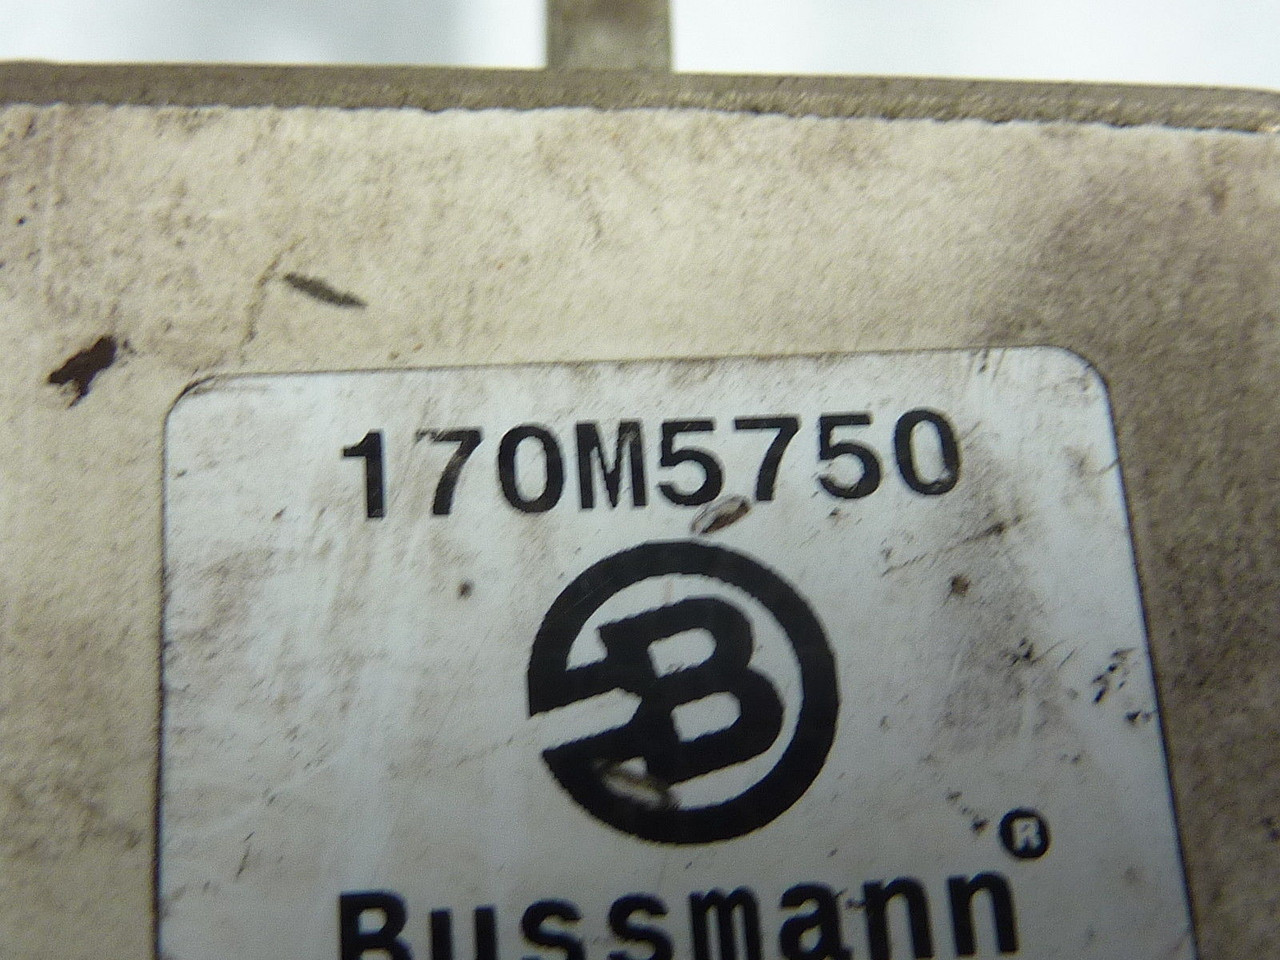 Bussmann 170M5750 Fuse 1000A 1000V USED